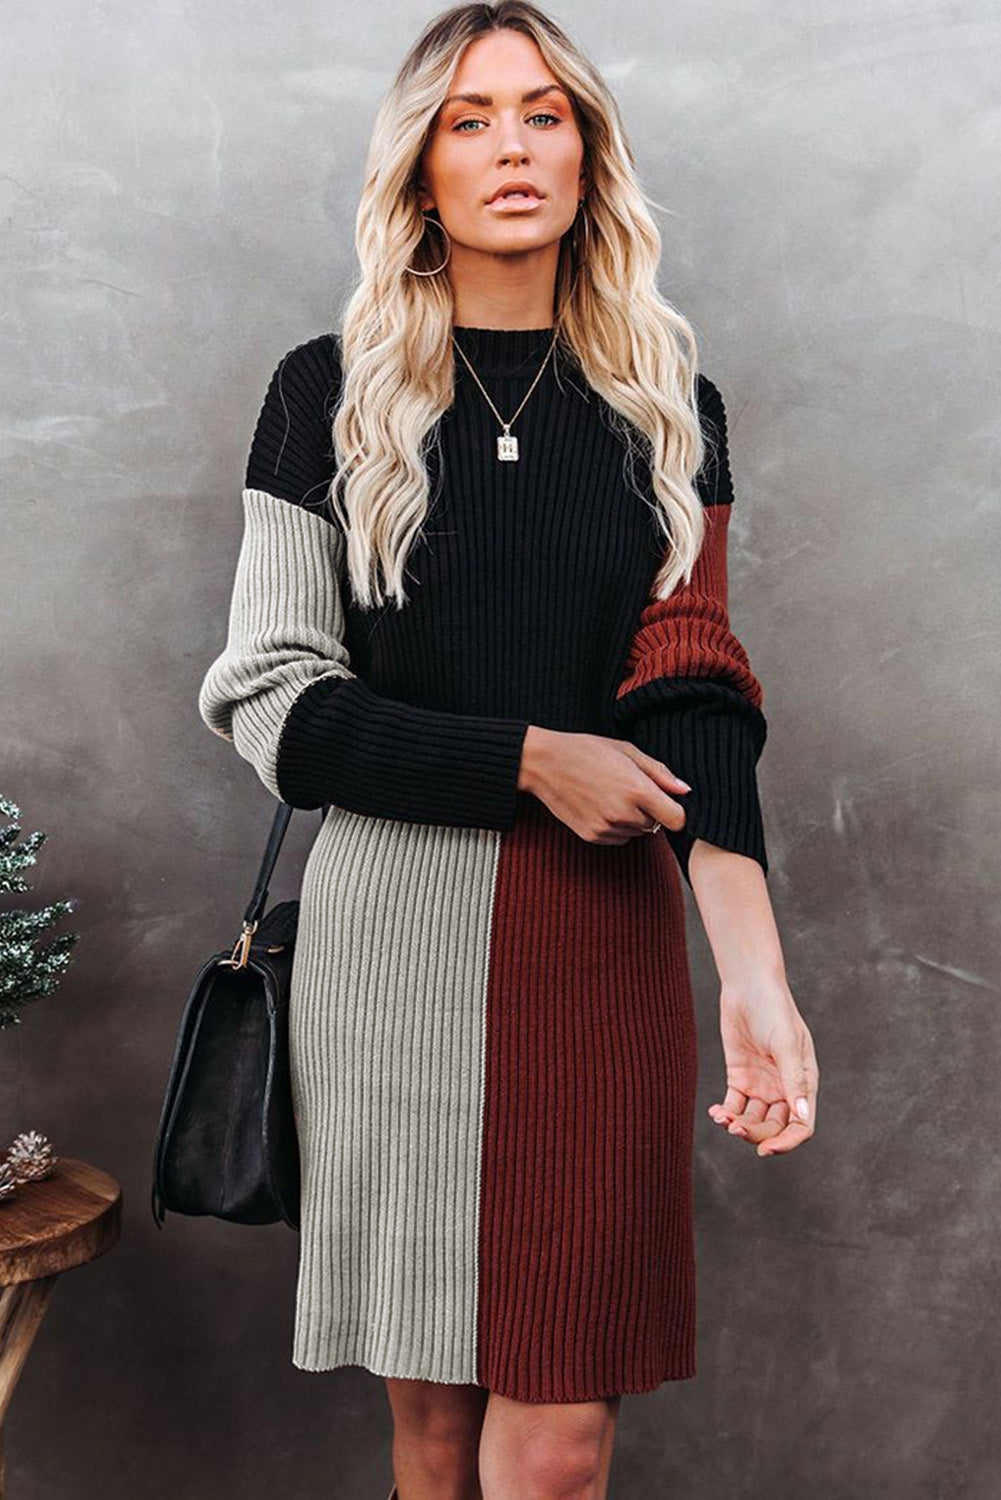 Colorblock Knit Sweater Mini  Dress